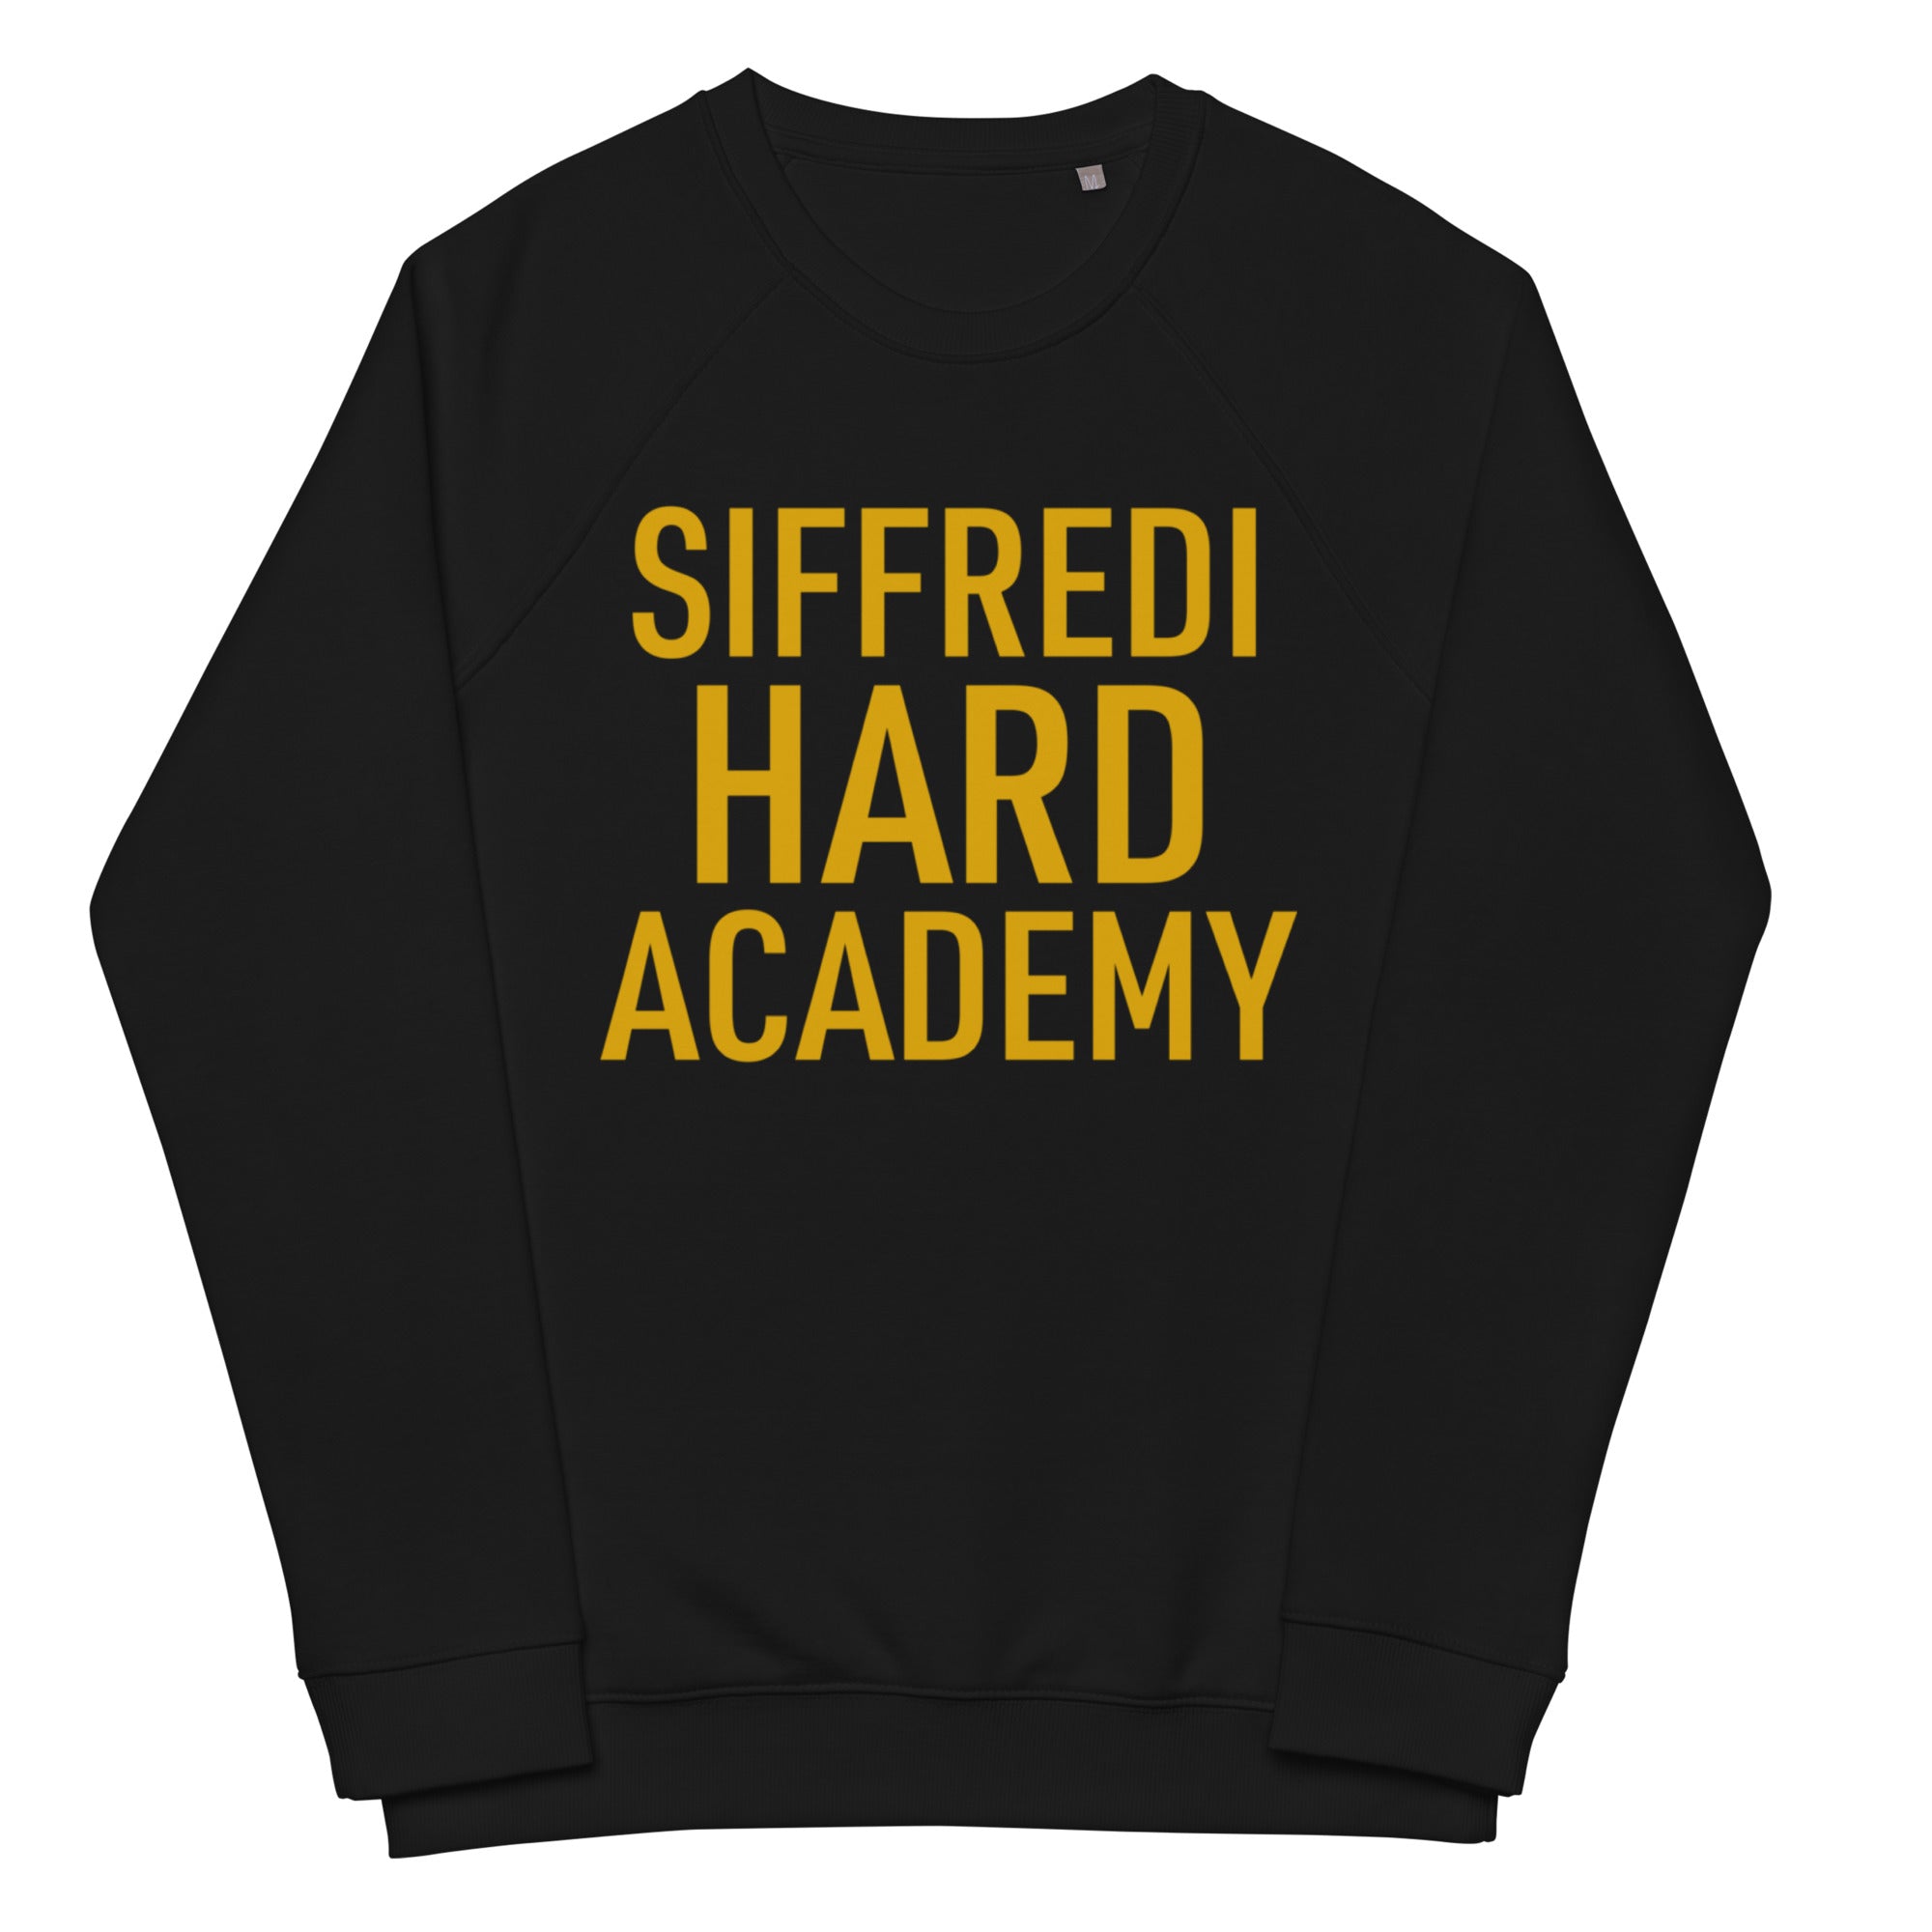 Siffredi Hard Academy Sweatshirt - Black